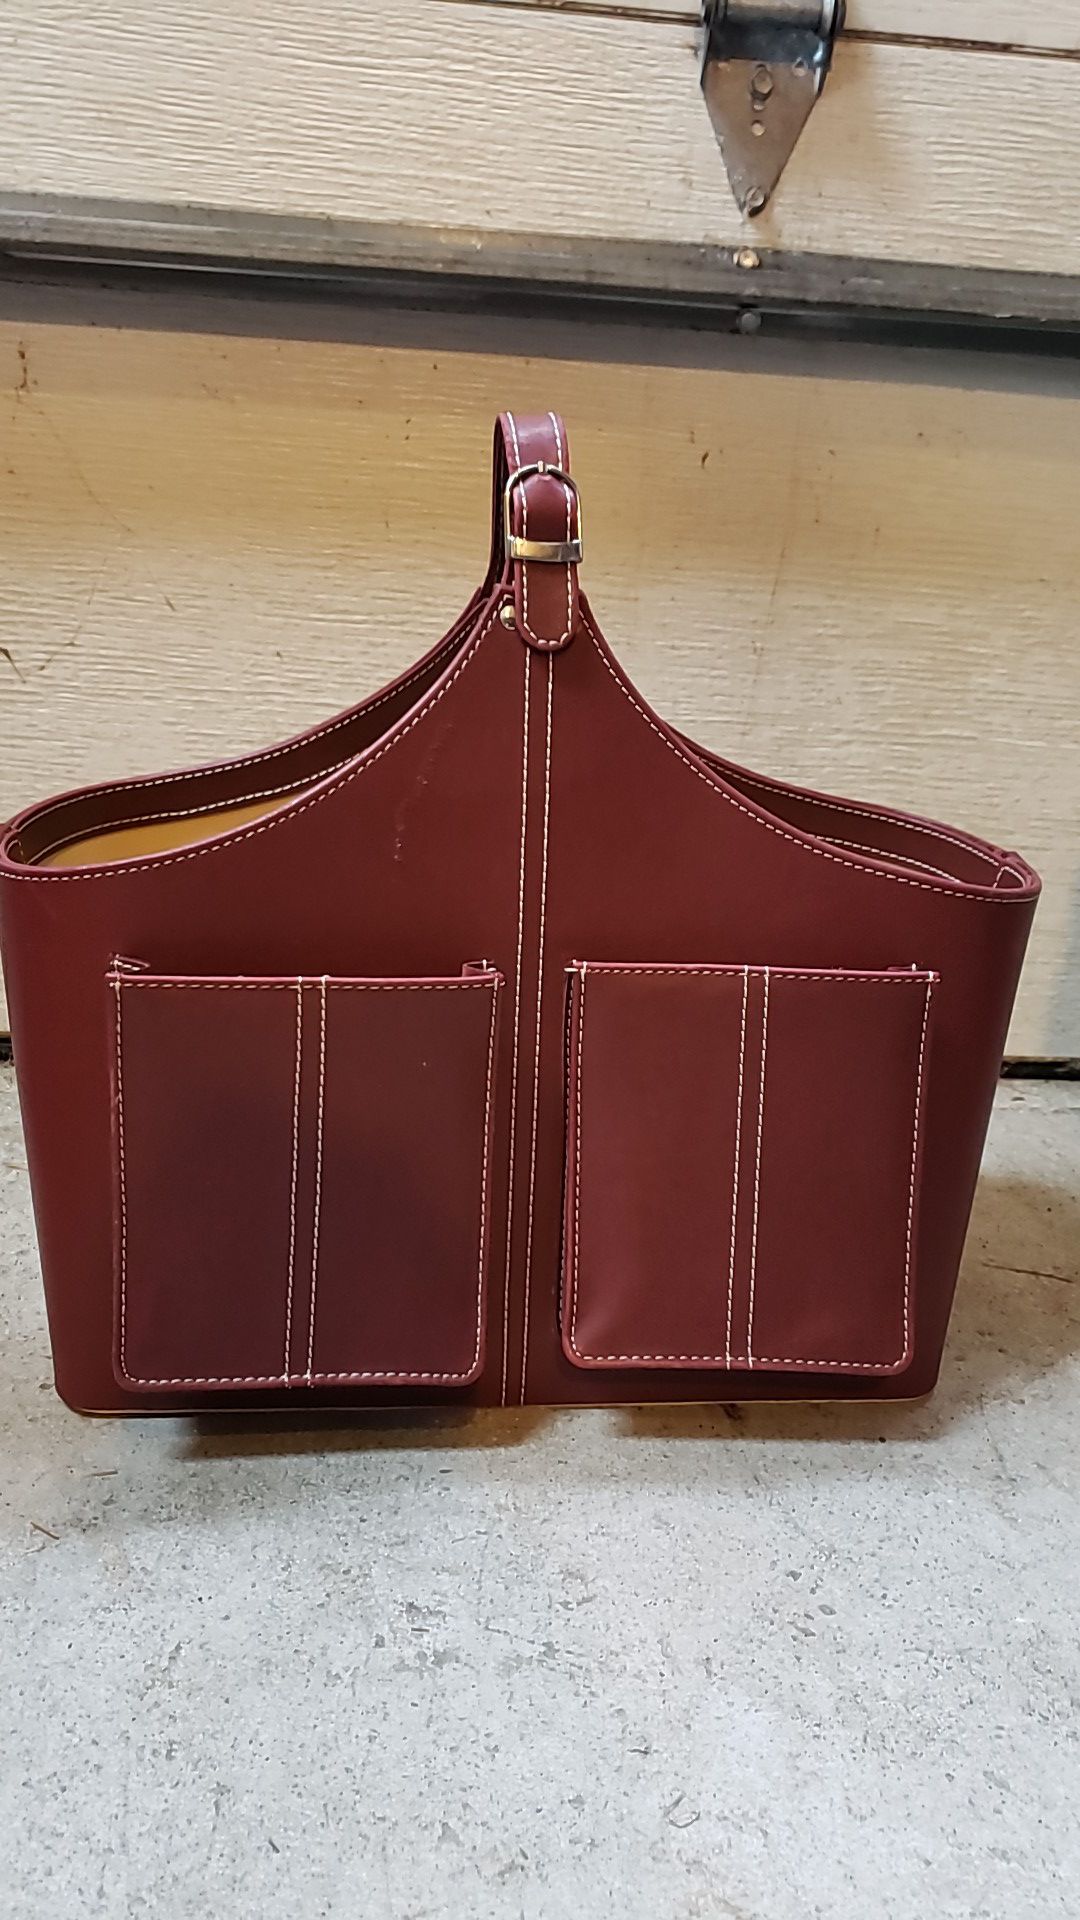 Leather magazine holder / rack